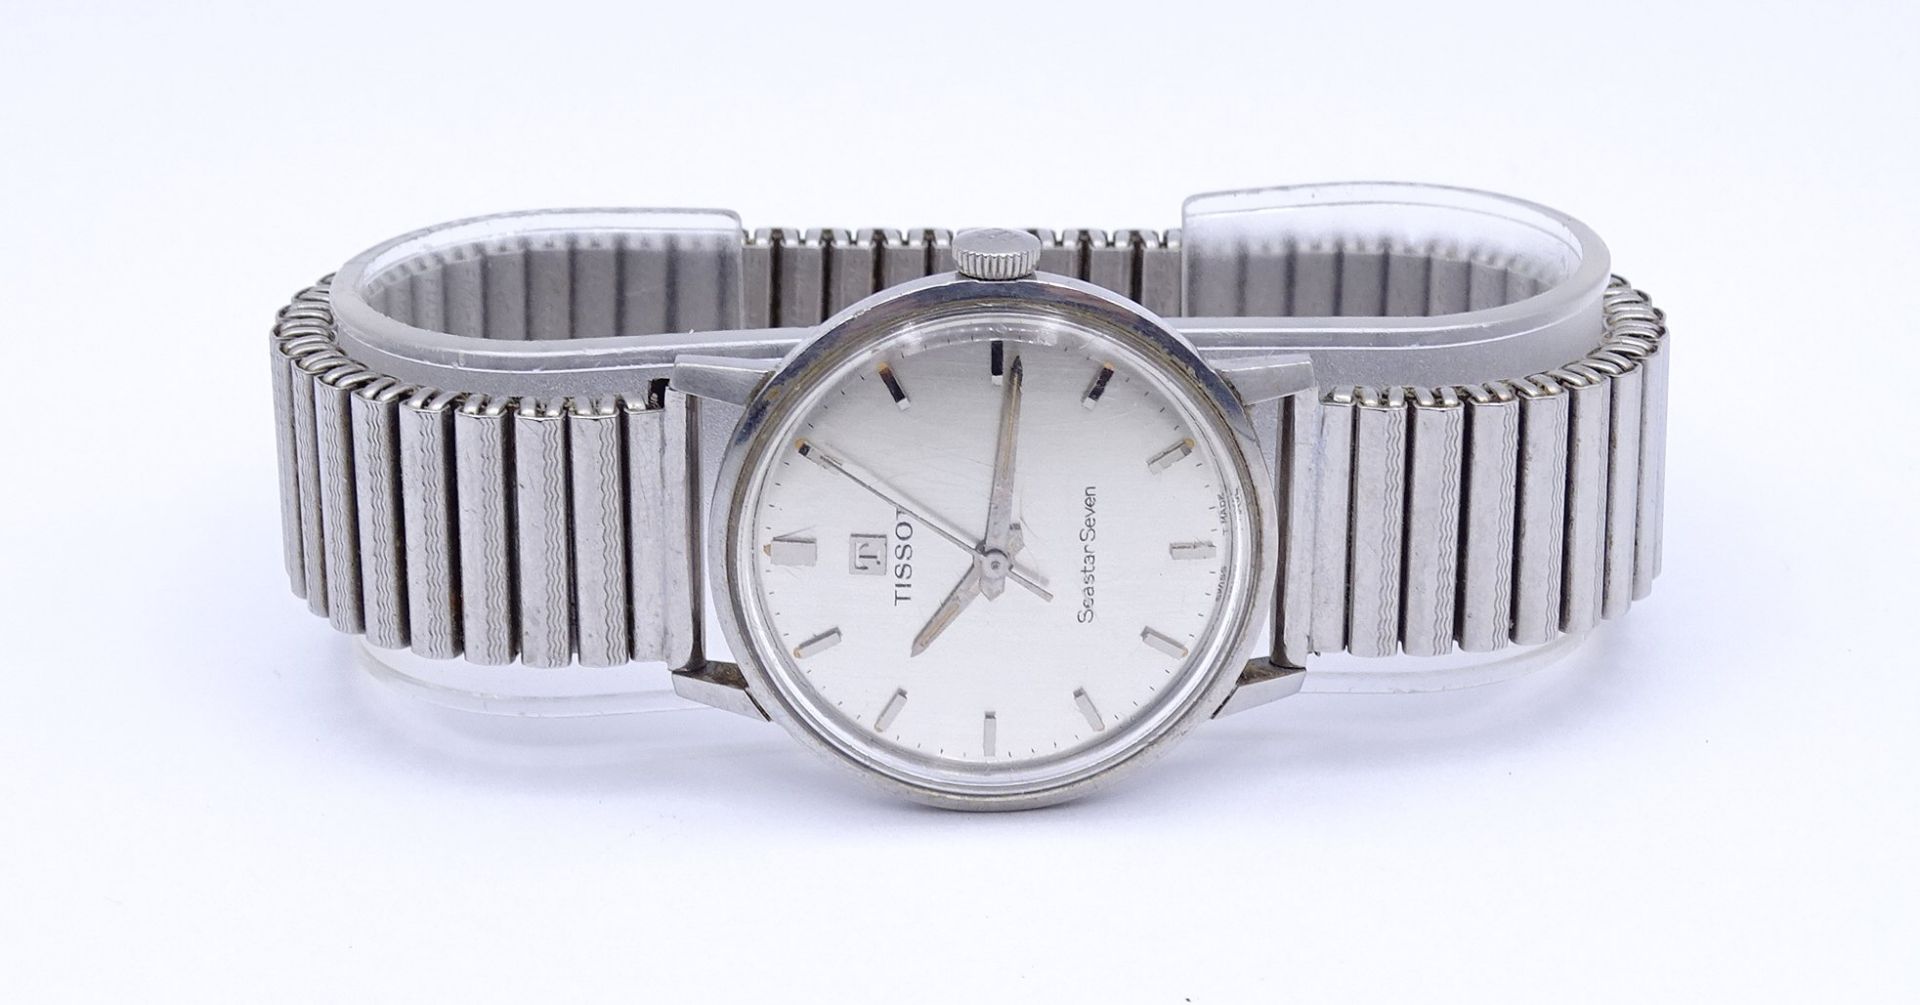 Herren Armbanduhr "Tissot" Seastar Seven, mechanisch, Werk steht, D. 31,6mm,Krone fest, lose - Bild 5 aus 5